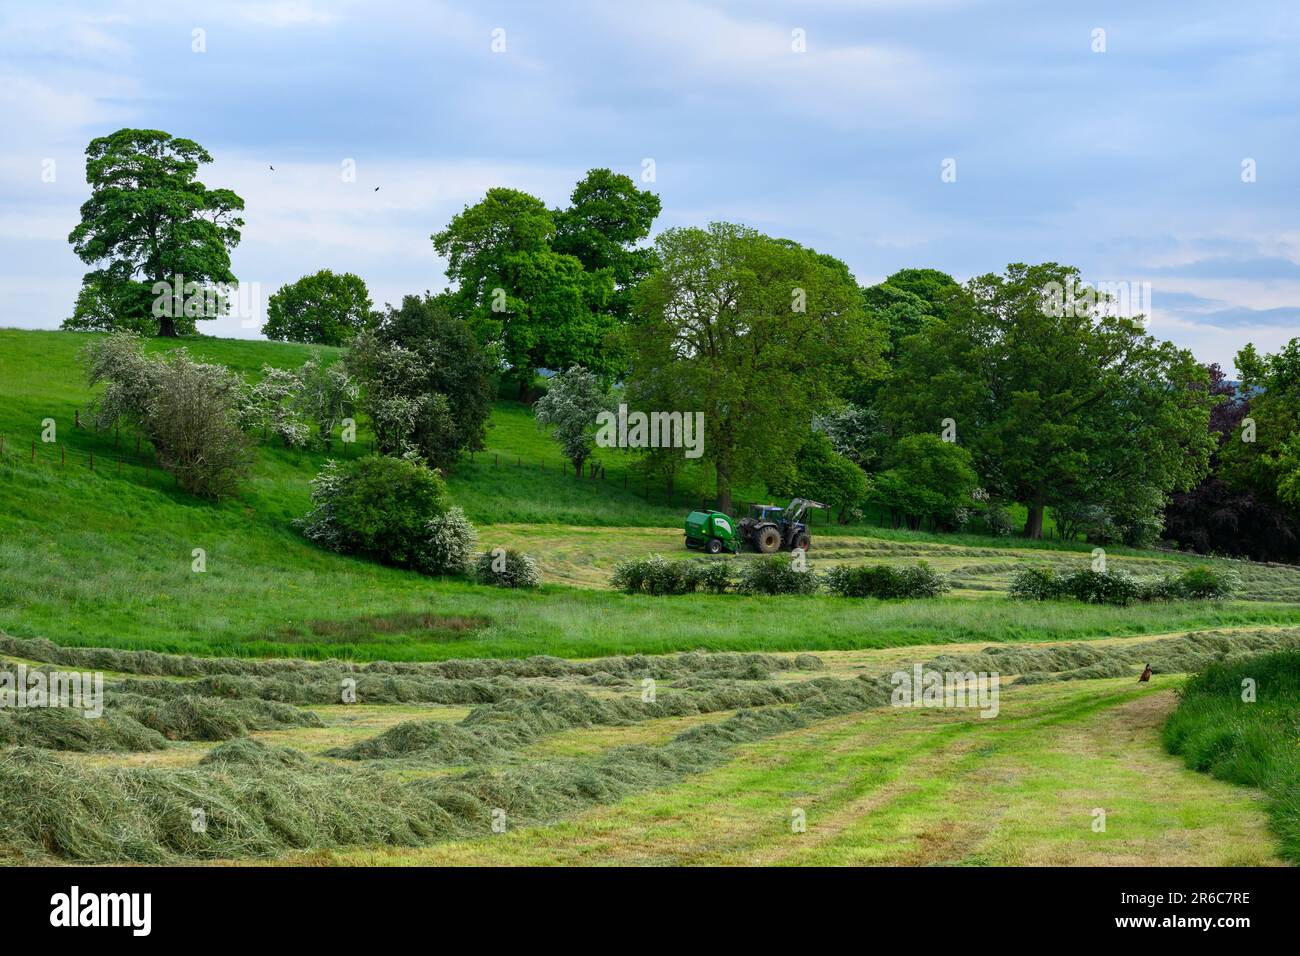 Fabrication de foin (tracteur Valmet en cours de conduite dans le champ tirant la presse McHale F5400, recueillant de l'herbe sèche pour le fourrage) - Leathley, North Yorkshire, Angleterre, Royaume-Uni. Banque D'Images